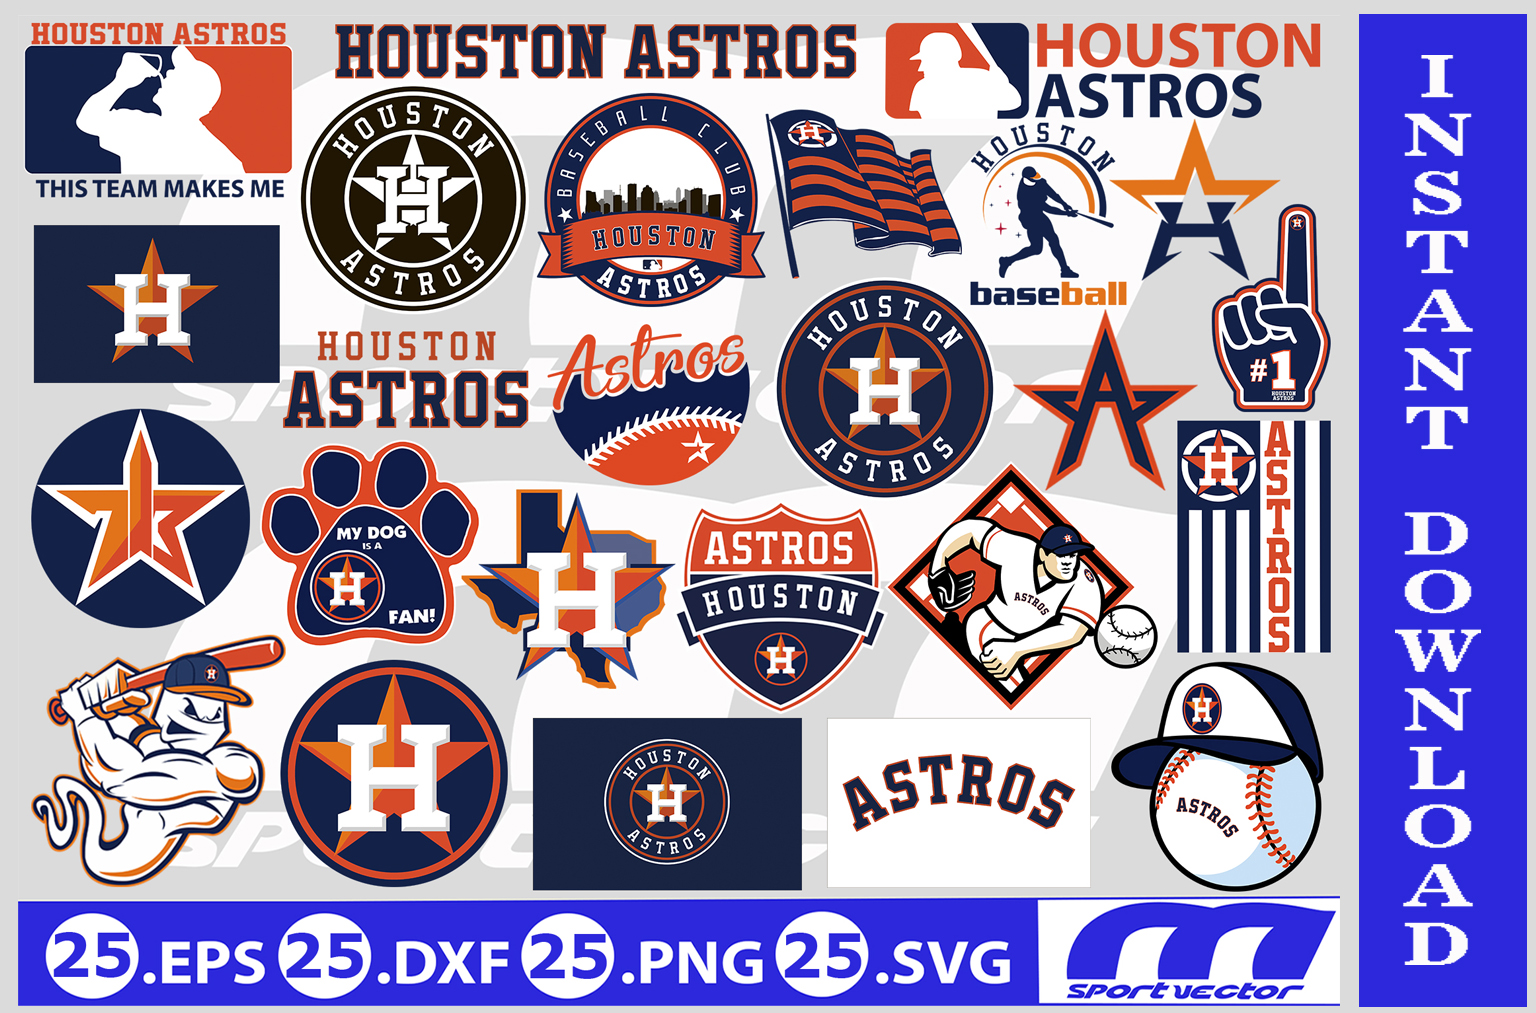 Astros baseball team SVG, Astros baseball SVG, Houston baseball SVG